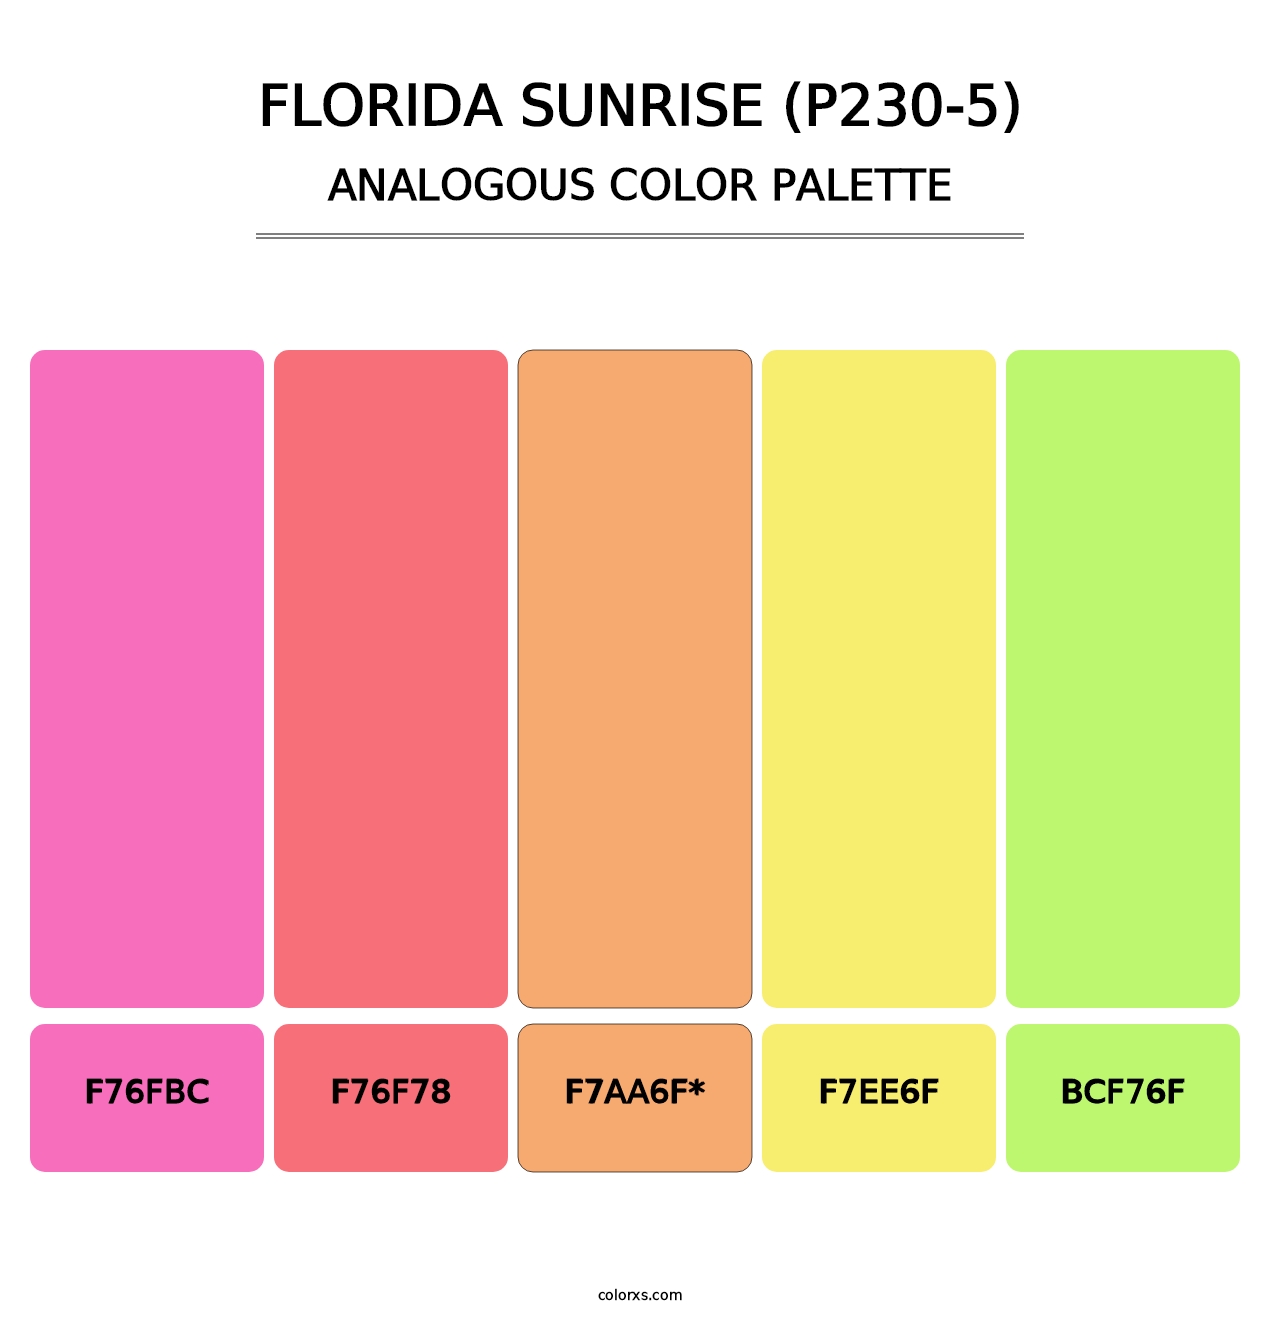 Florida Sunrise (P230-5) - Analogous Color Palette